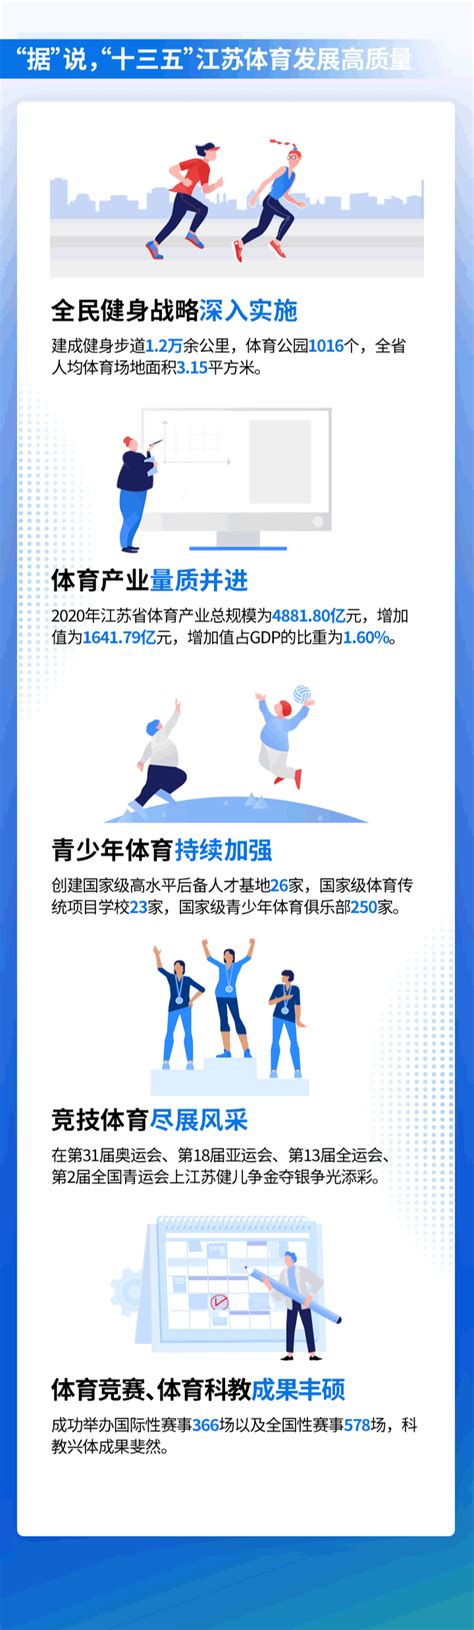 江苏省县域体育产业发展经验_经济_服务_特色